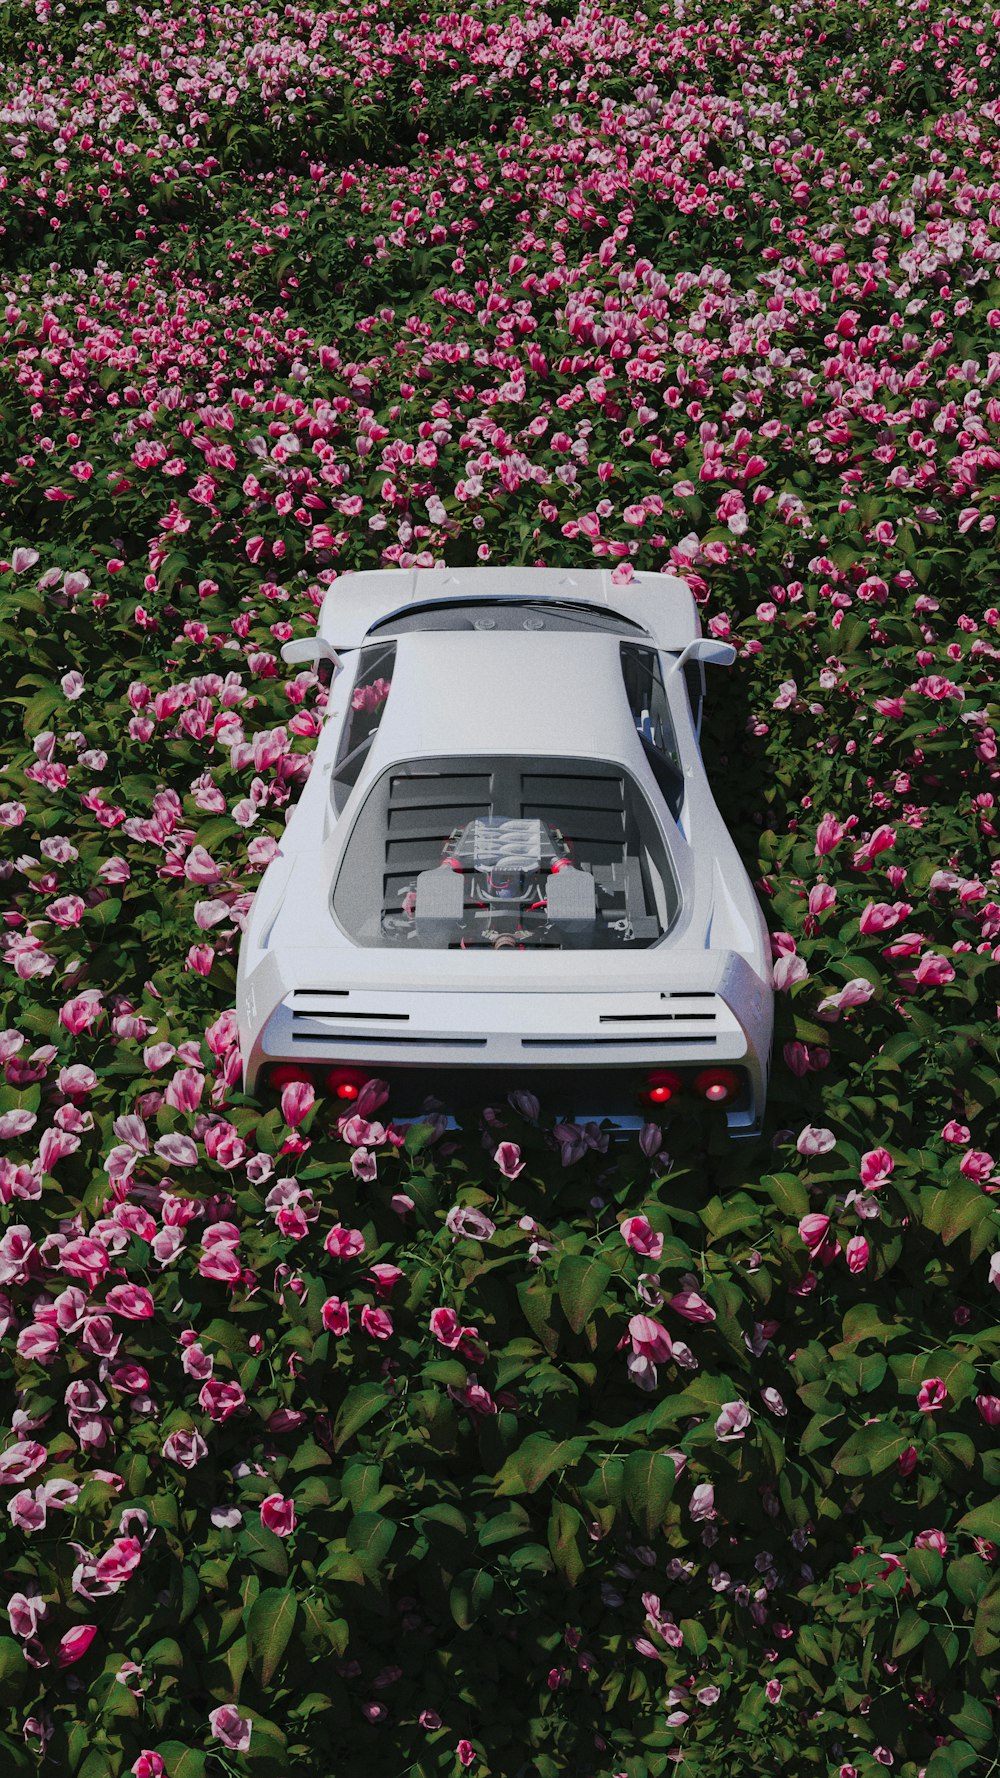 Una macchina è parcheggiata in un campo di fiori